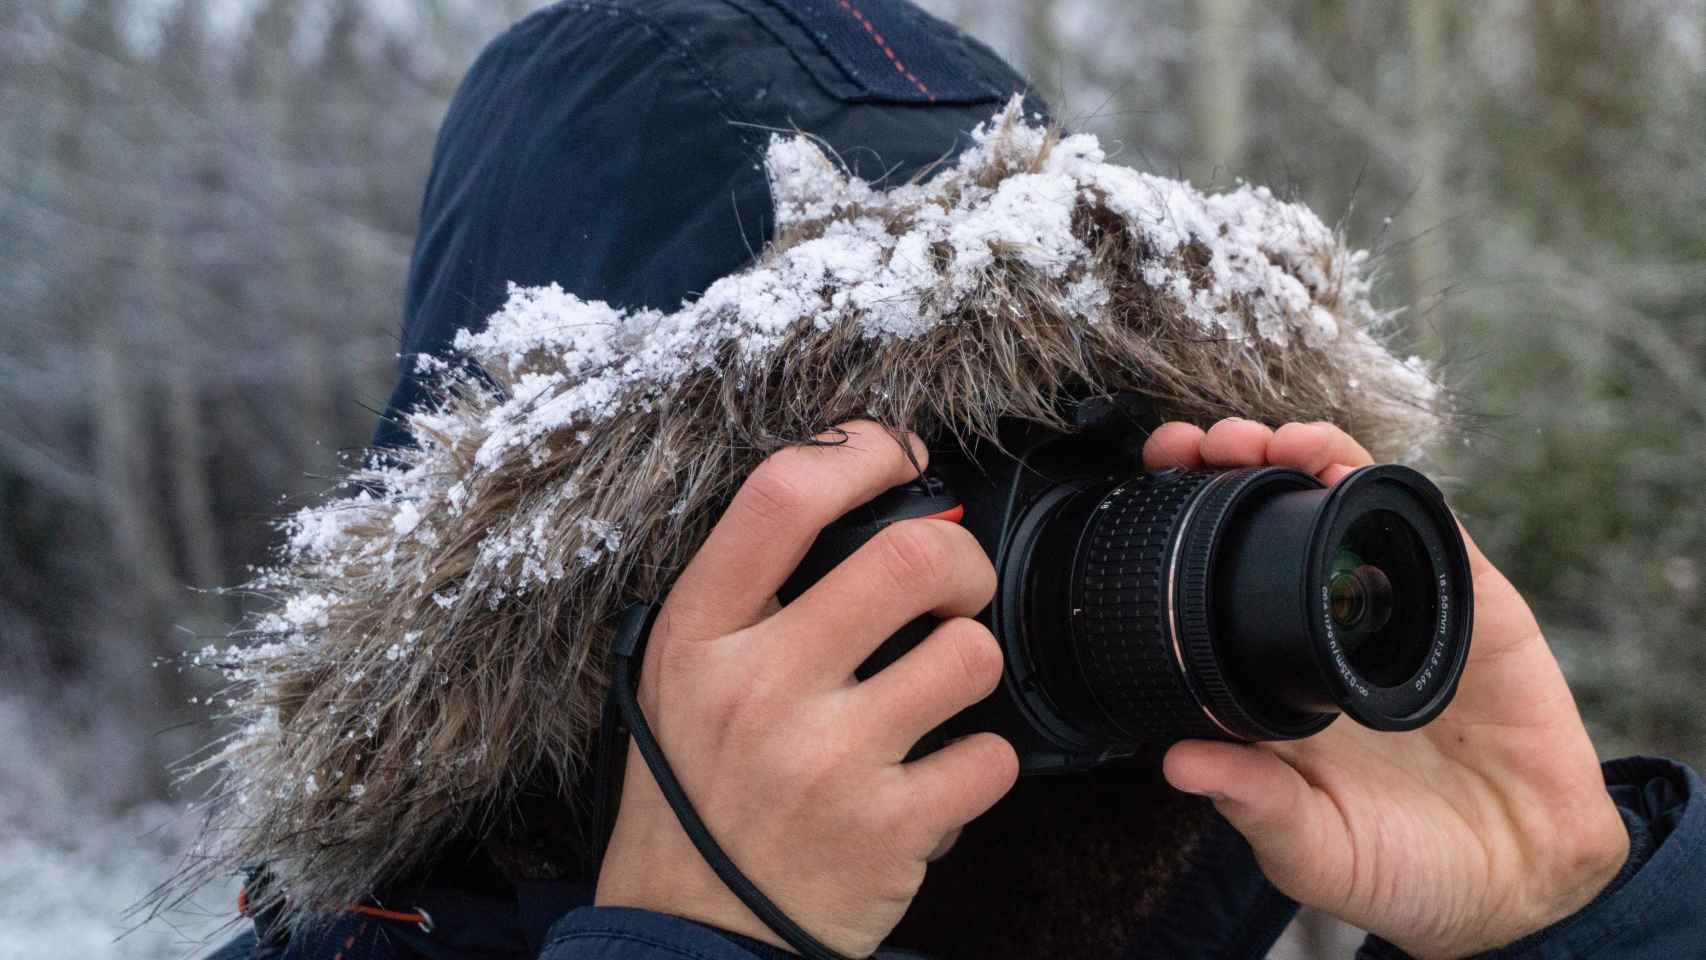 Dale un toque más profesional a tu Instagram con estas cámaras